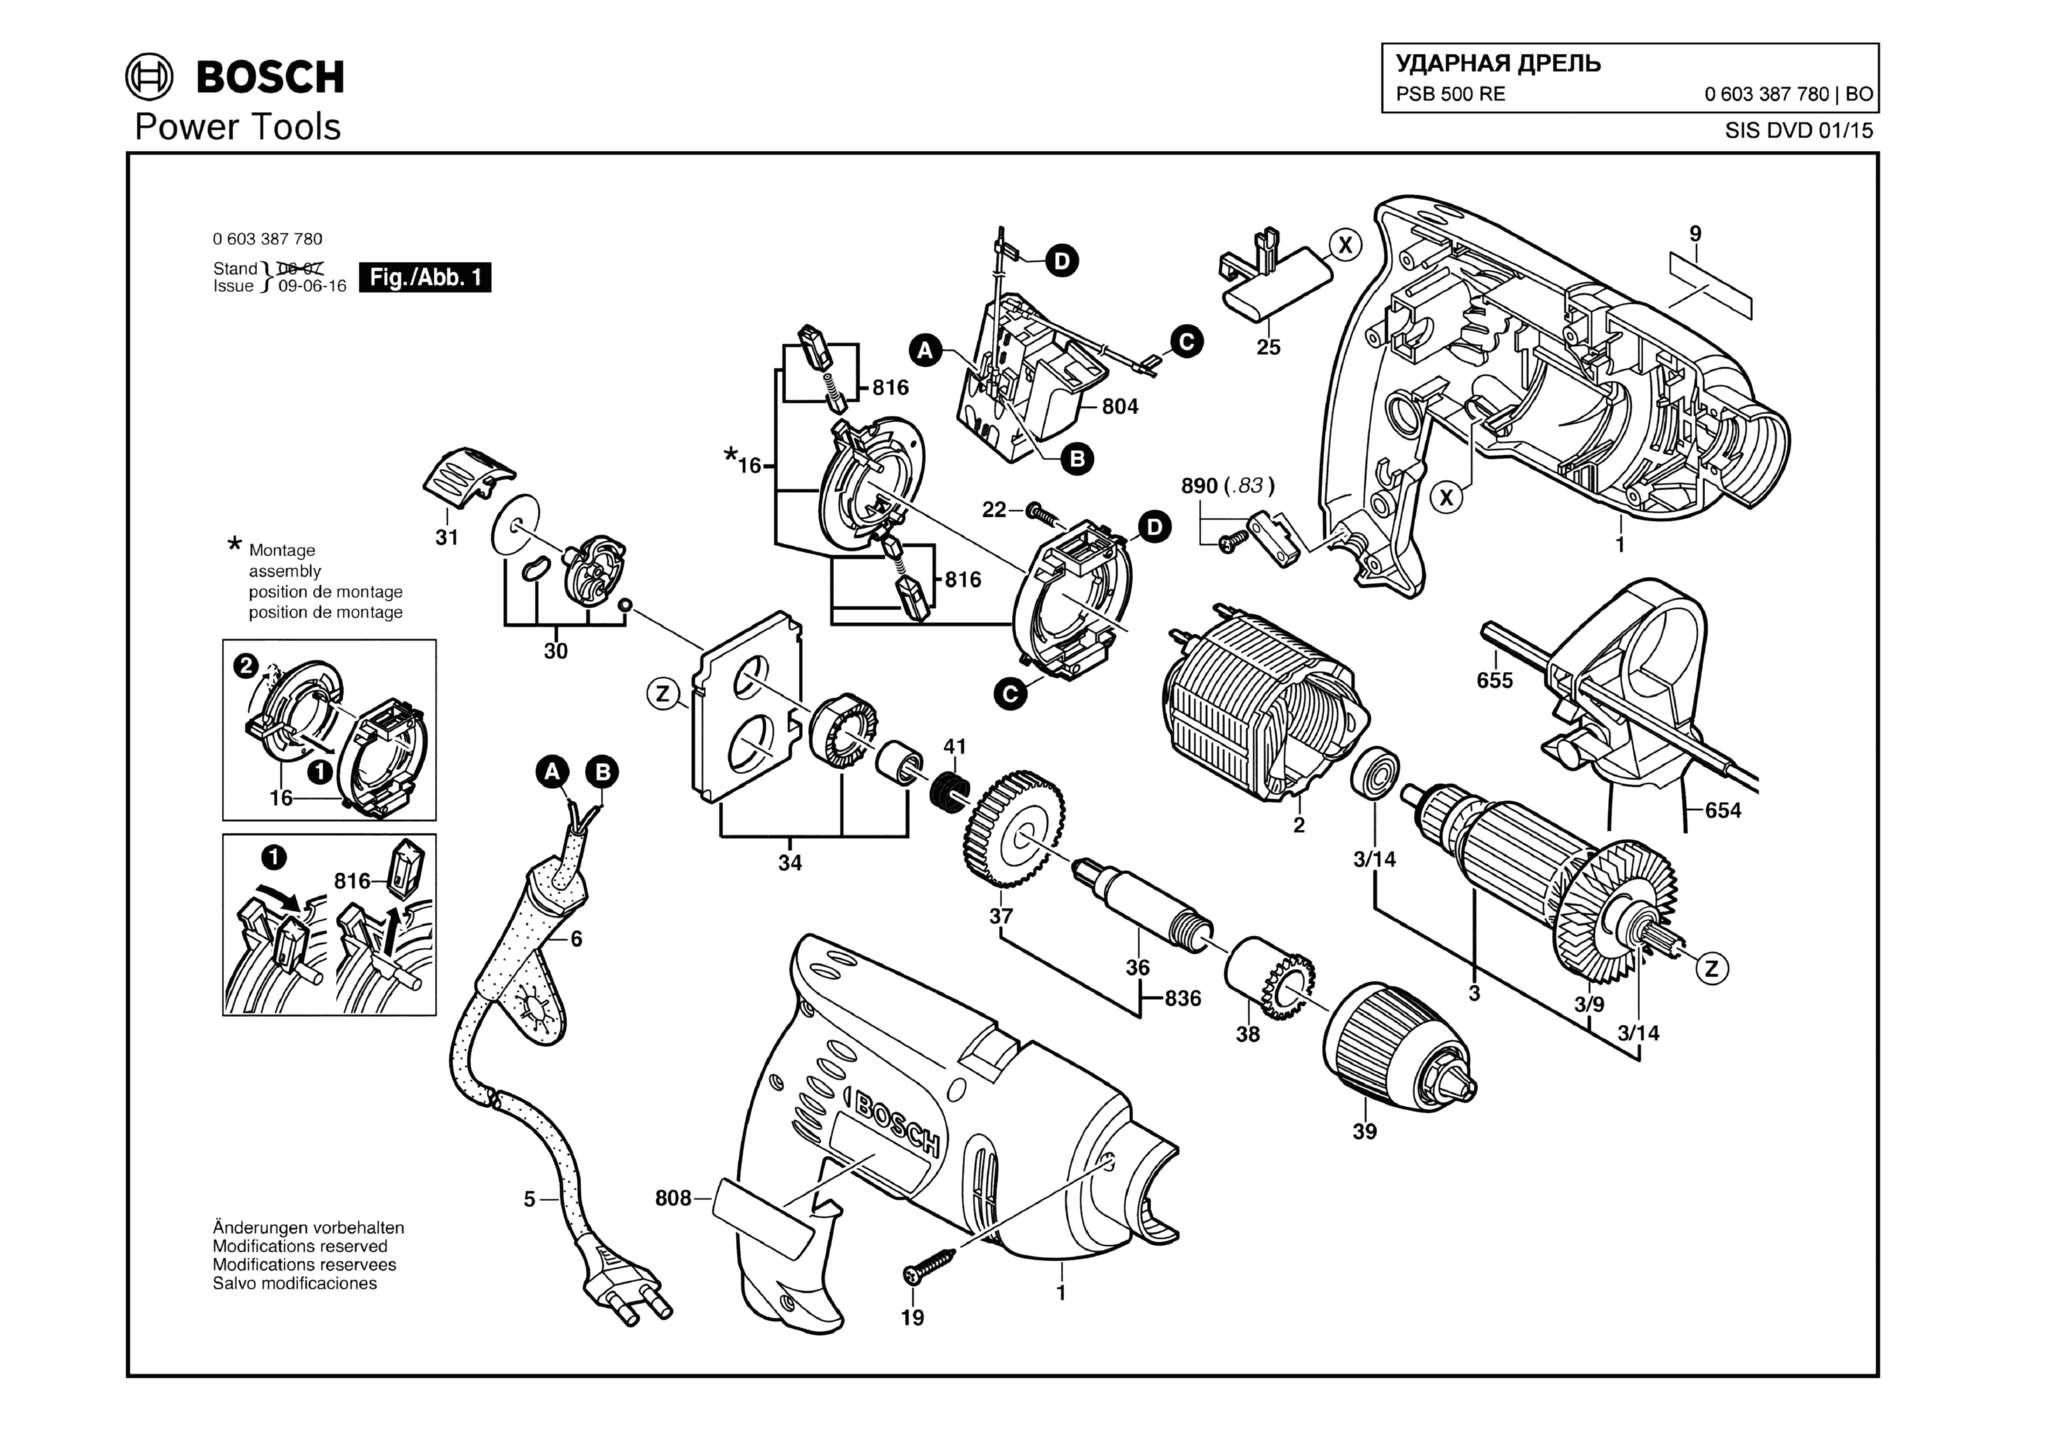 Запчасти, схема и деталировка Bosch PSB 500 RE (ТИП 0603387780)